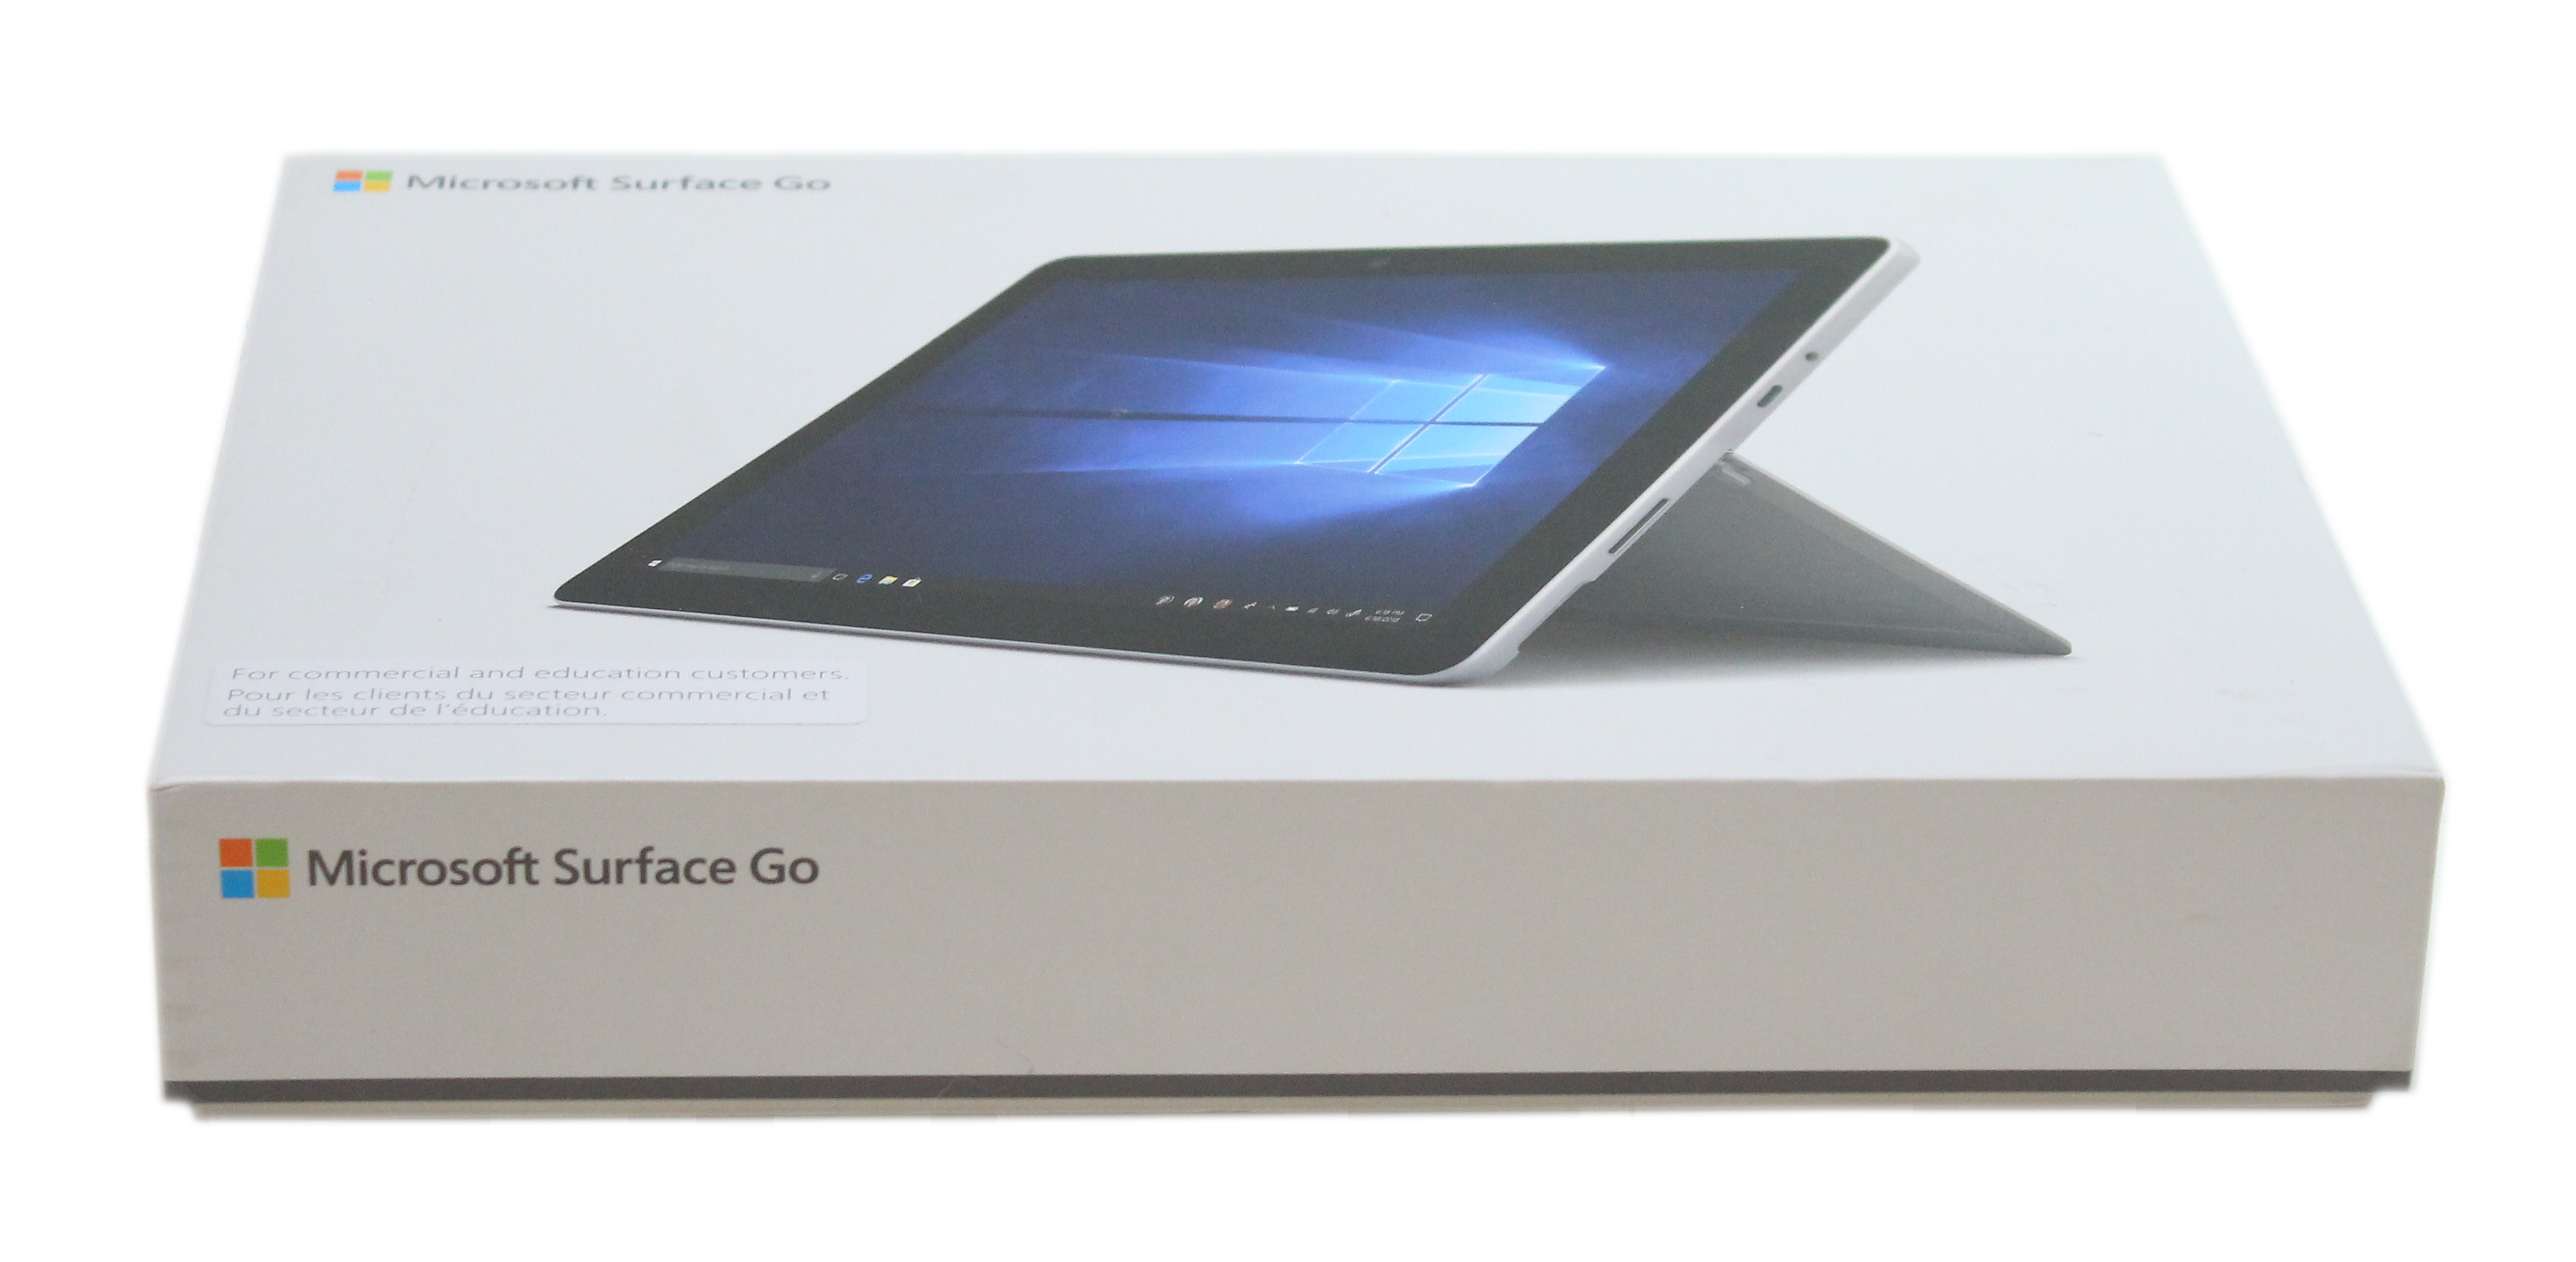 Microsoft Surface Go 1824 10 Intel Pentium 4415Y 1.6 GHz RAM 8Gb 